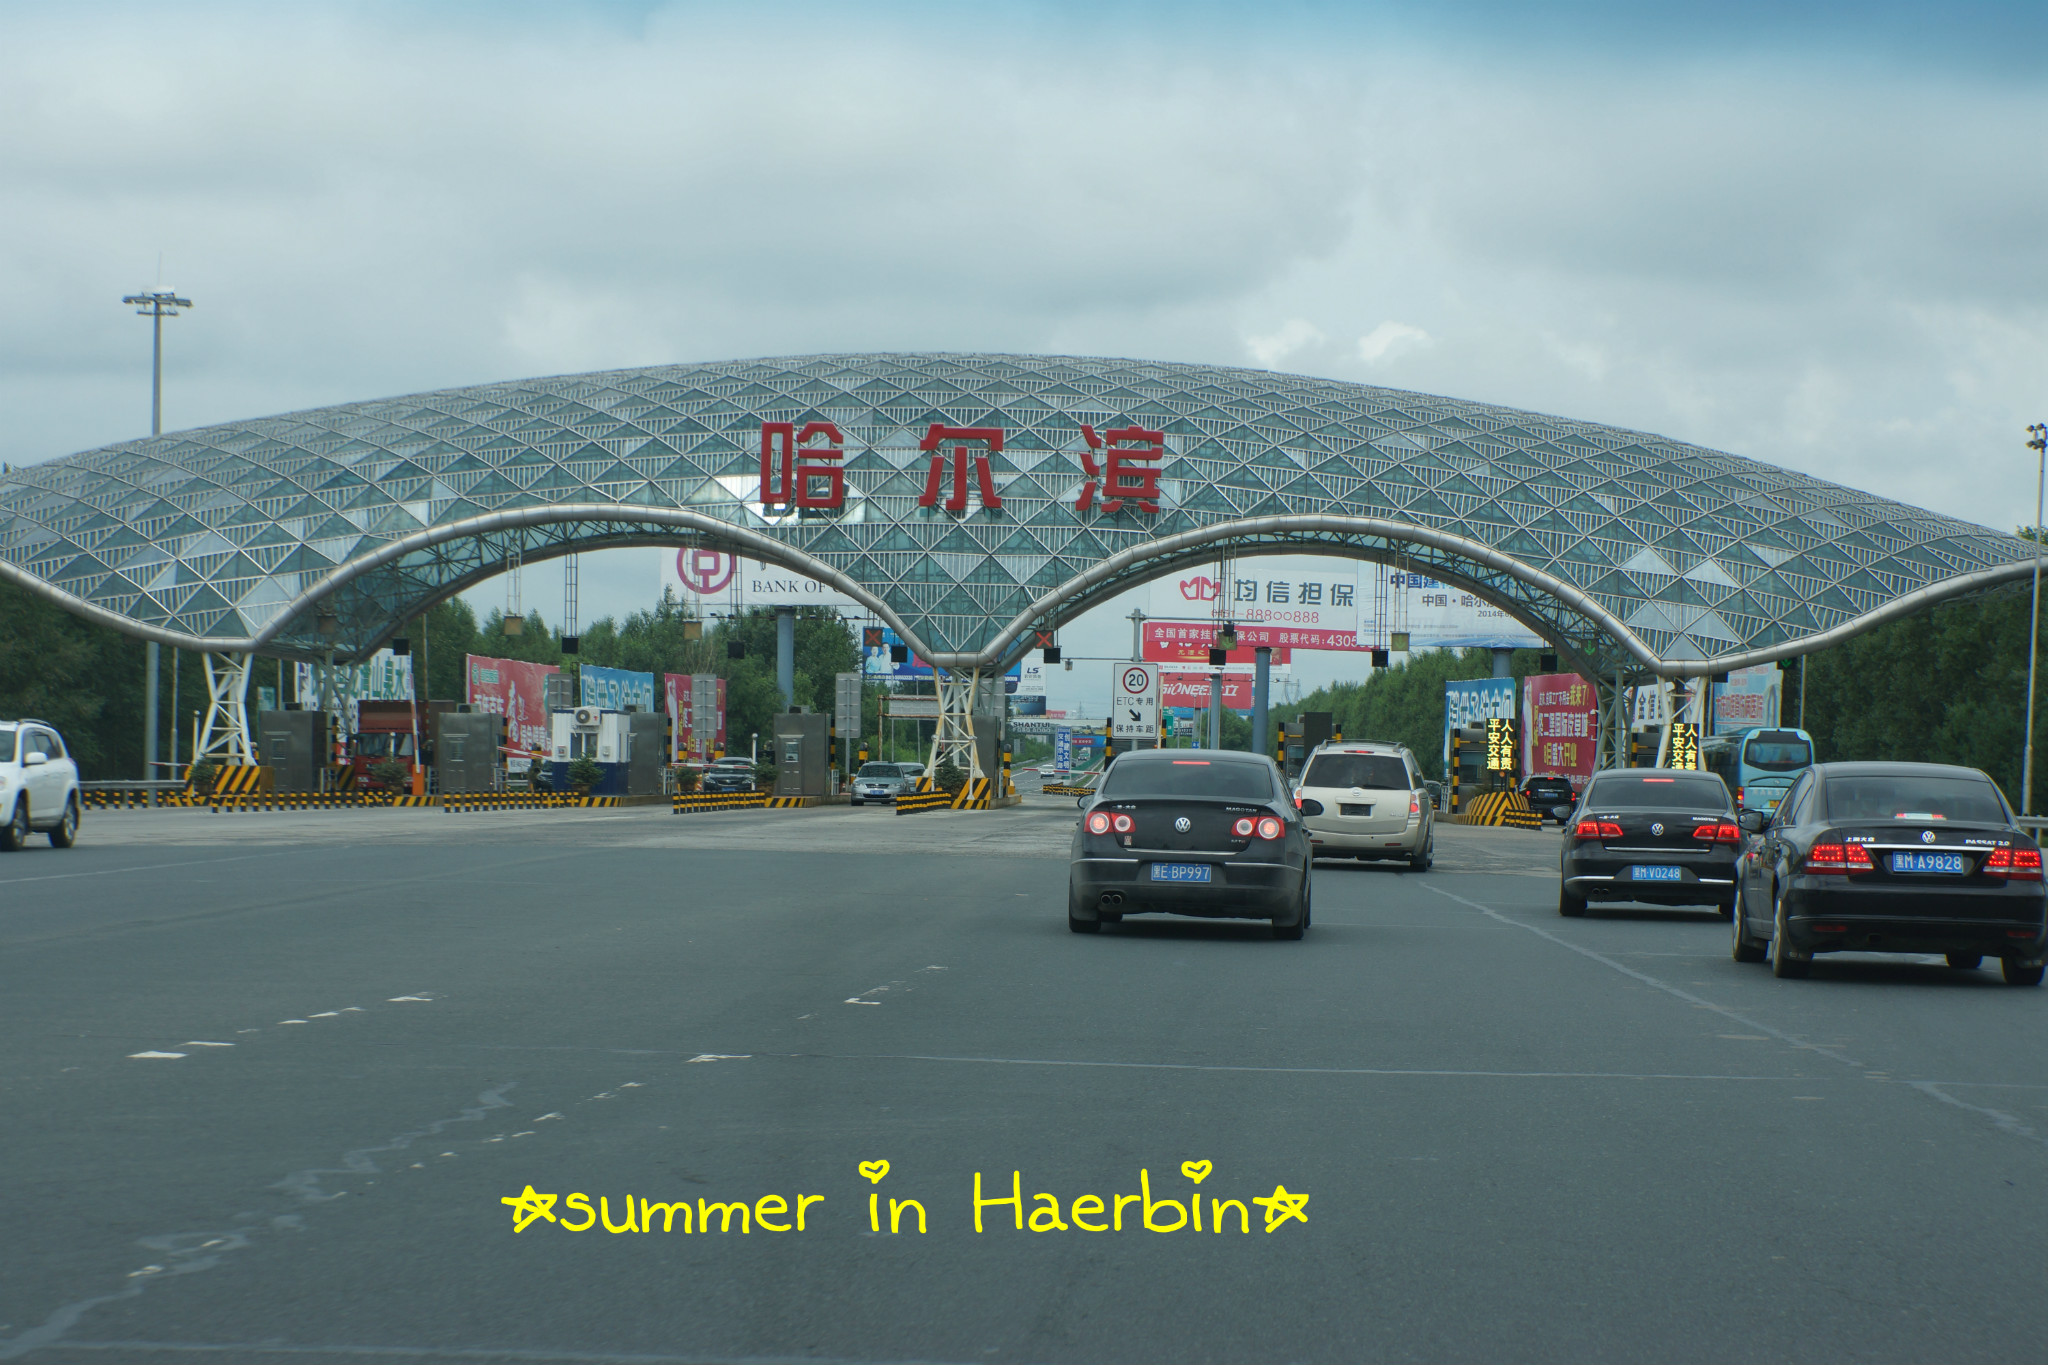 皓妈带你去旅行感受夏日里的哈尔滨五大连池详细讲解更新完毕谢谢支持